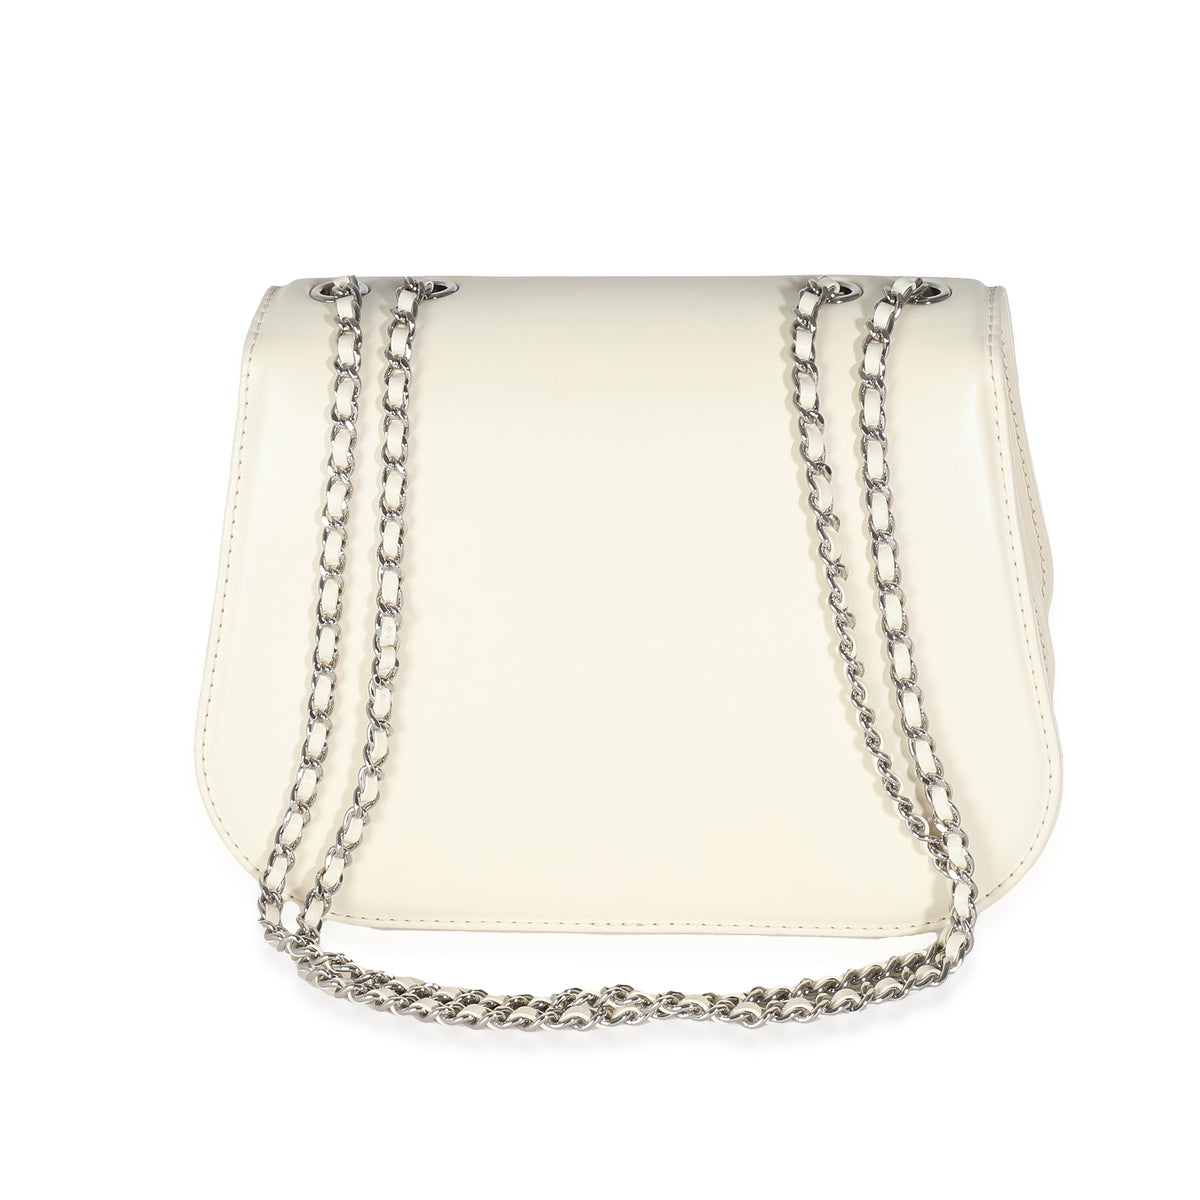 White Calfskin Small Braided Chain Chic Flap Bag